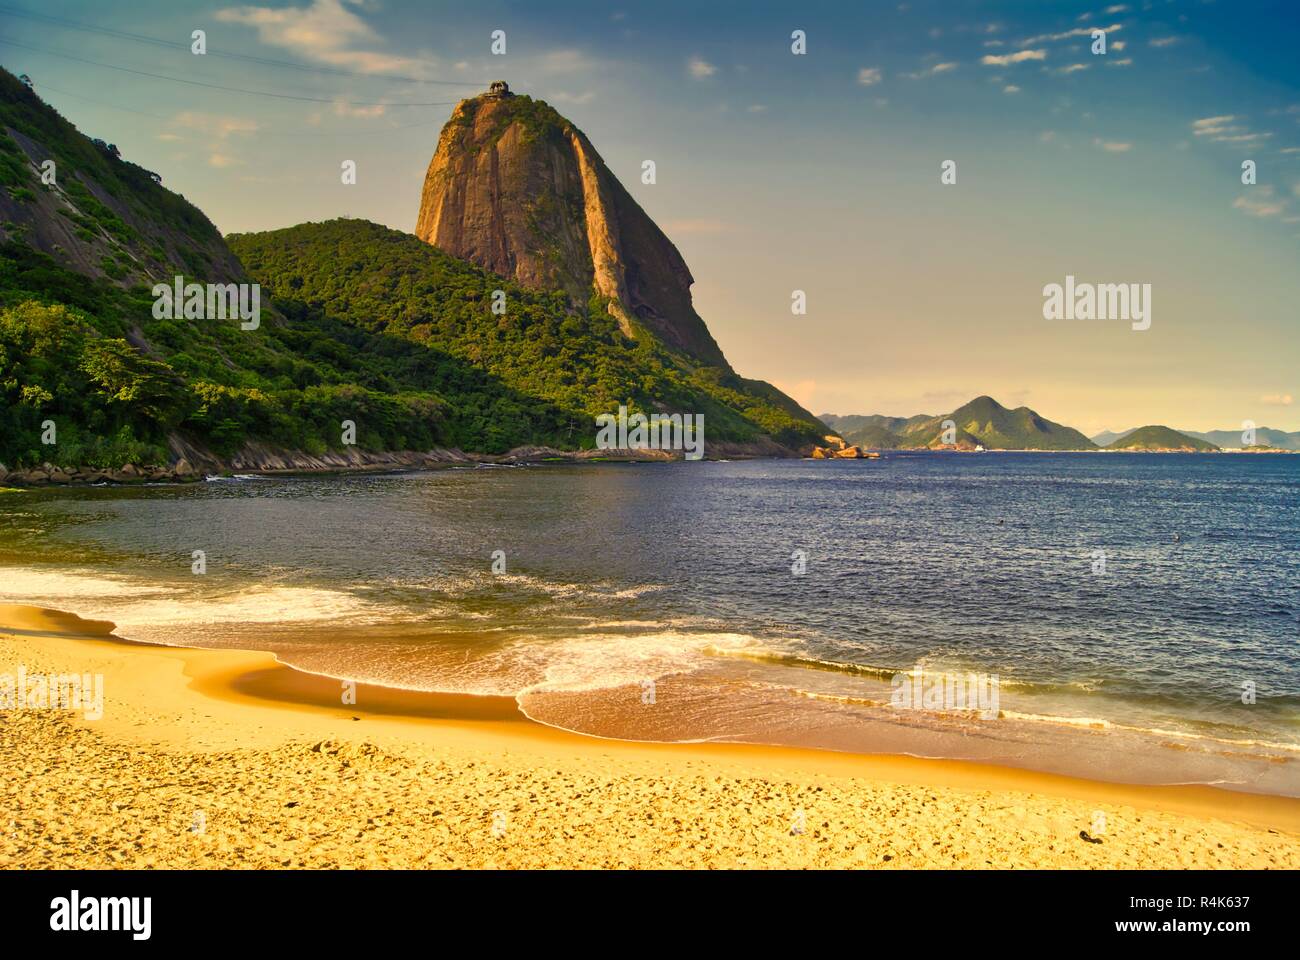 Praia Vermelha et Pain de Sucre à Rio de Janeiro, Brésil Banque D'Images